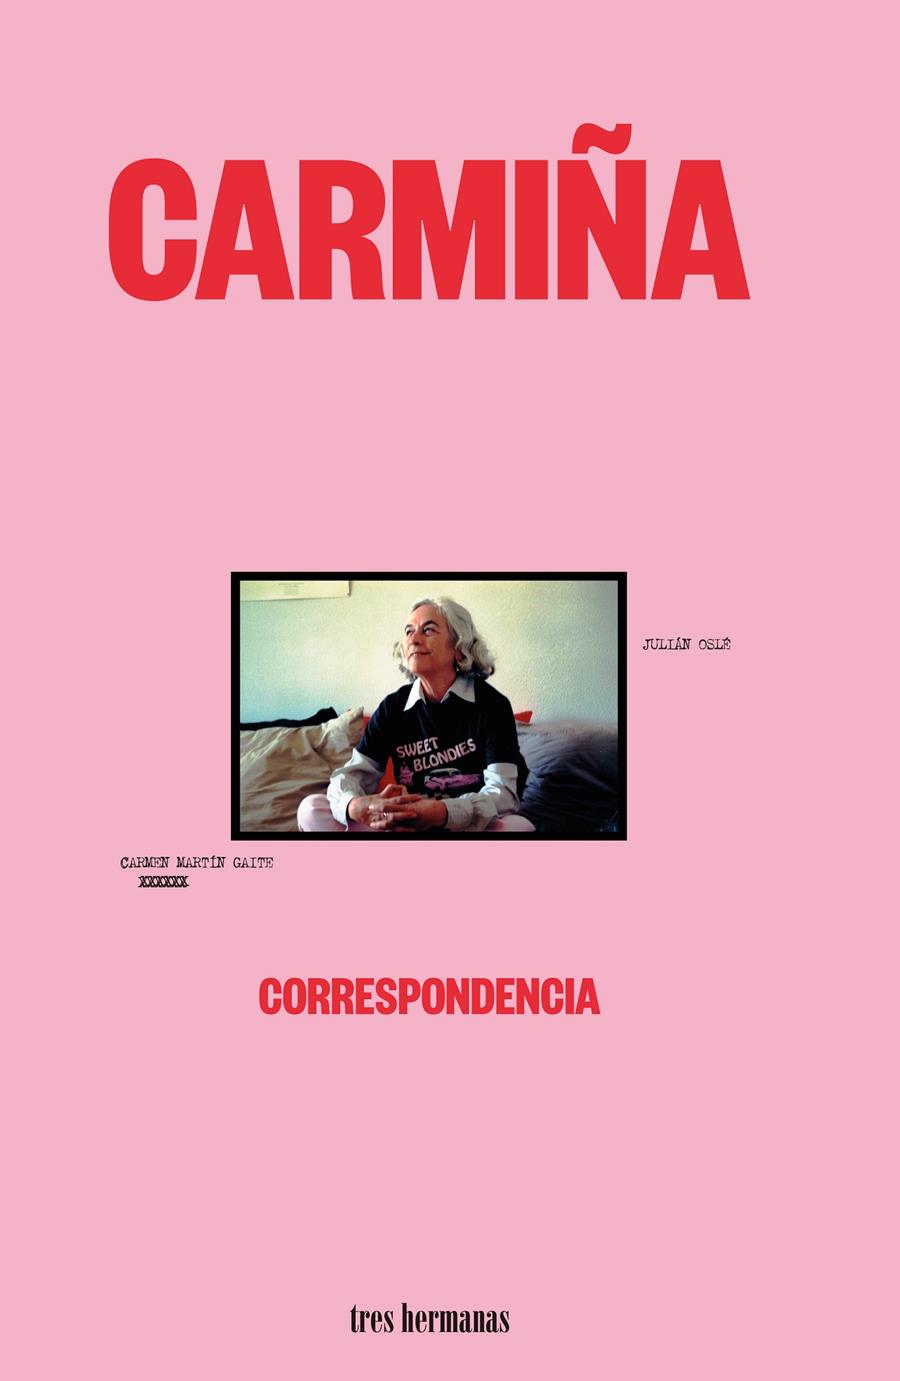 Carmiña | Martín Gaite, Carmen | Cooperativa autogestionària